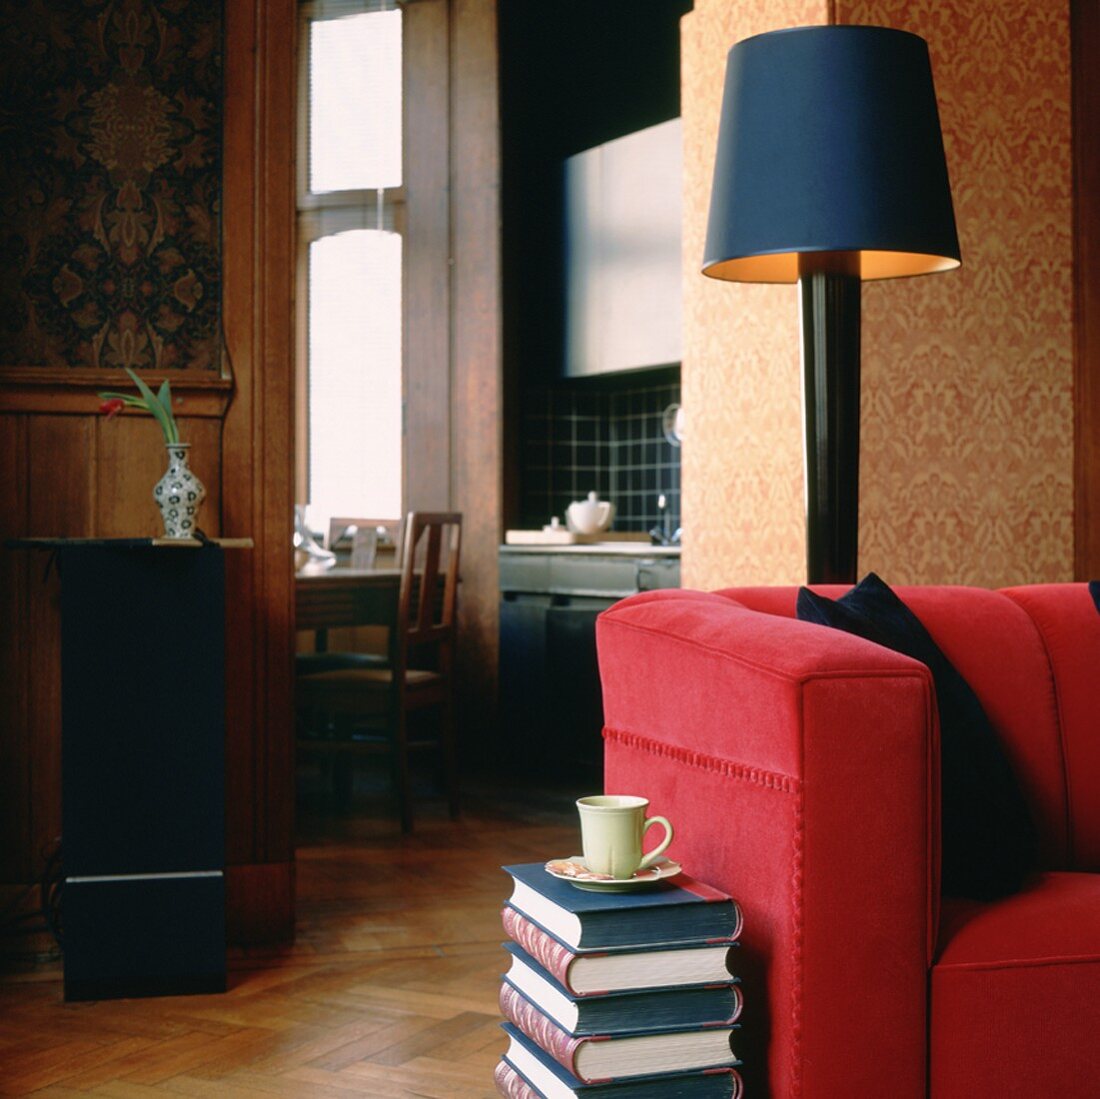 Wohnzimmerausschnitt mit rotem Sofa und Kaffeetasse auf einem Bücherstapel